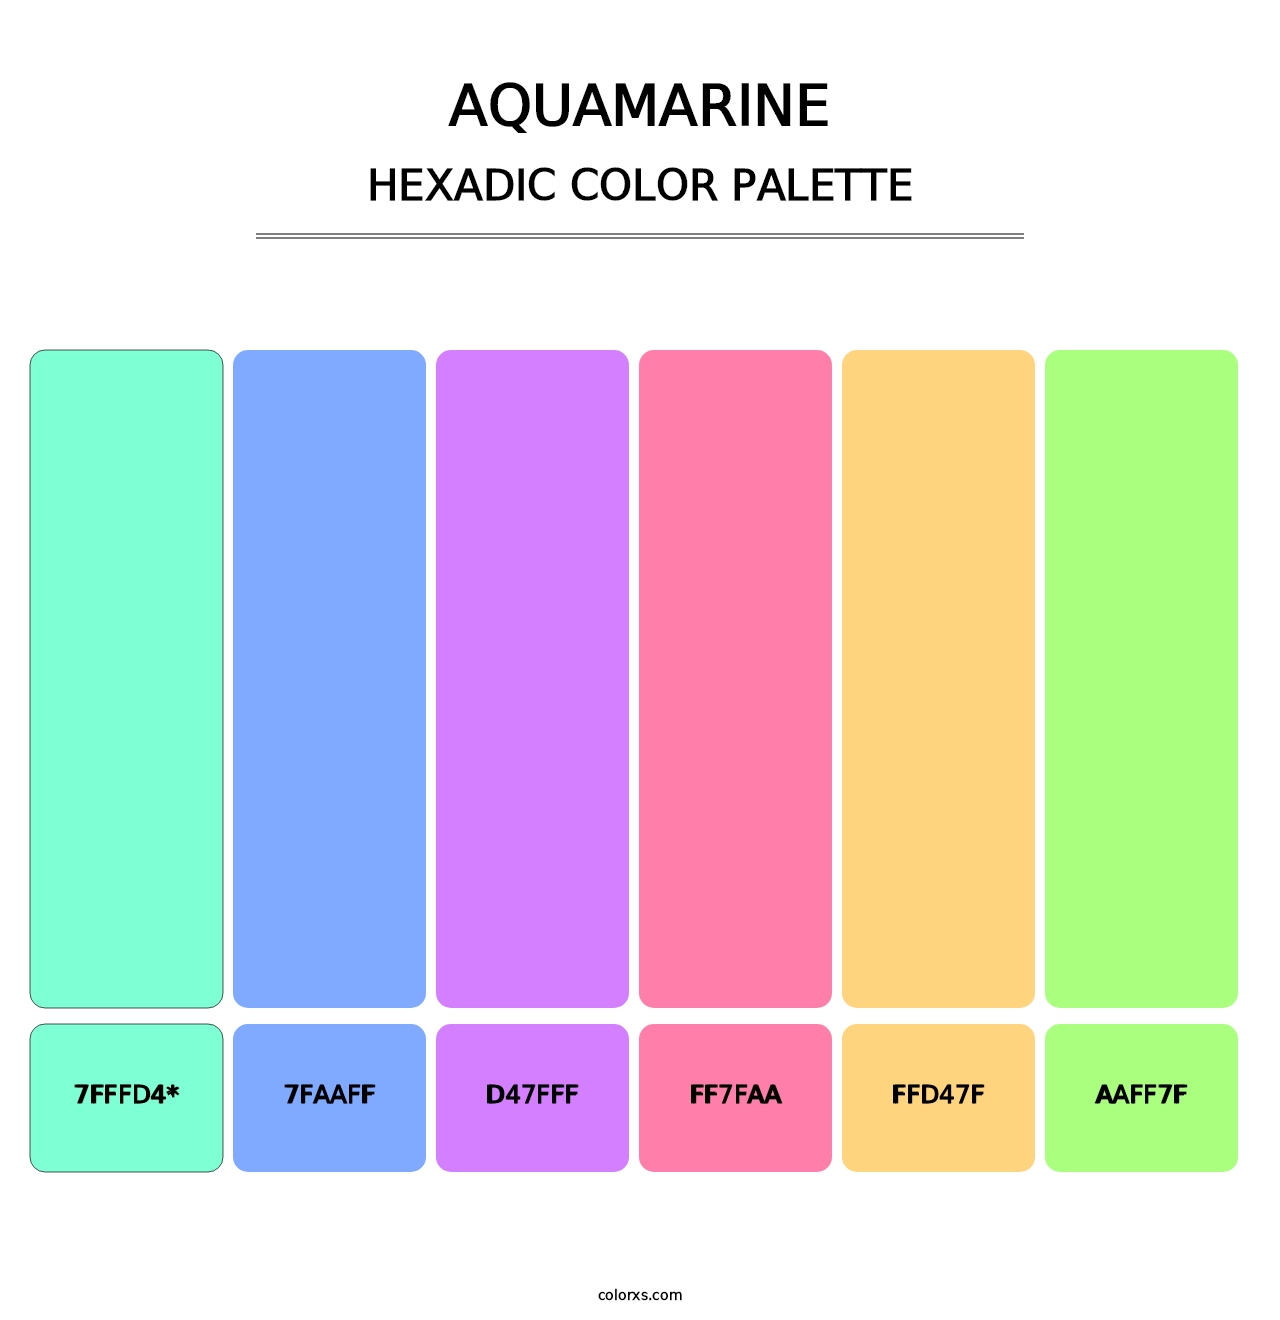 Aquamarine - Hexadic Color Palette